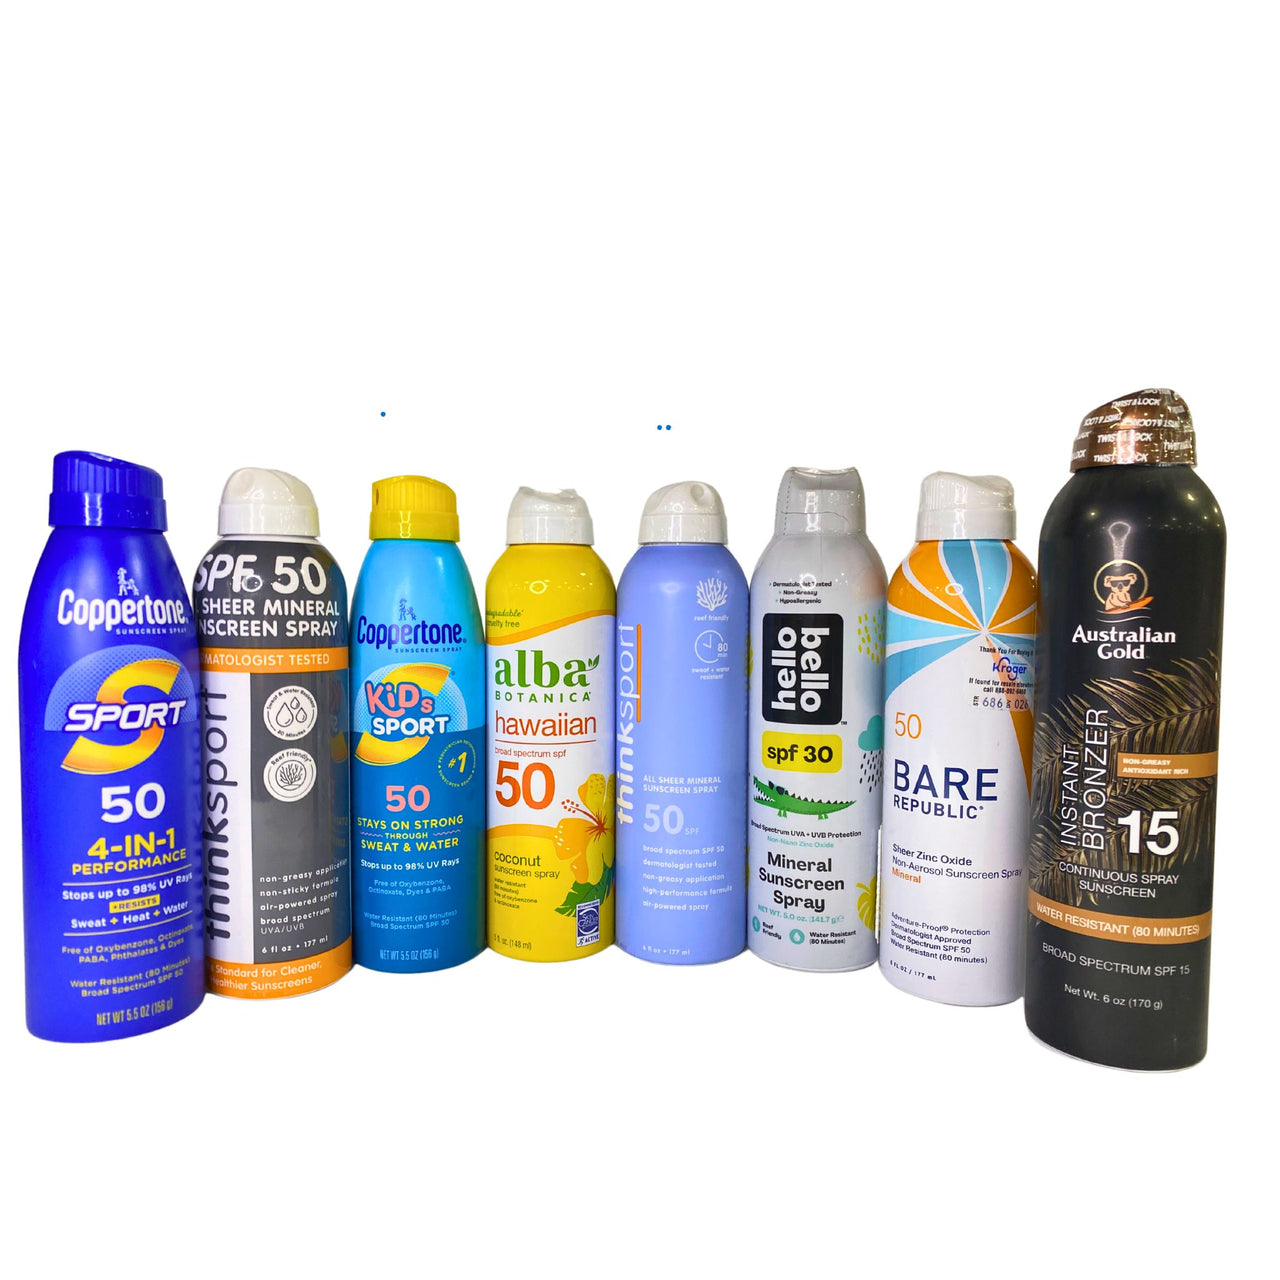 Sunscreen Mix Brands like Coppertone , Think , Alba , Bare Republic , Hello Bello